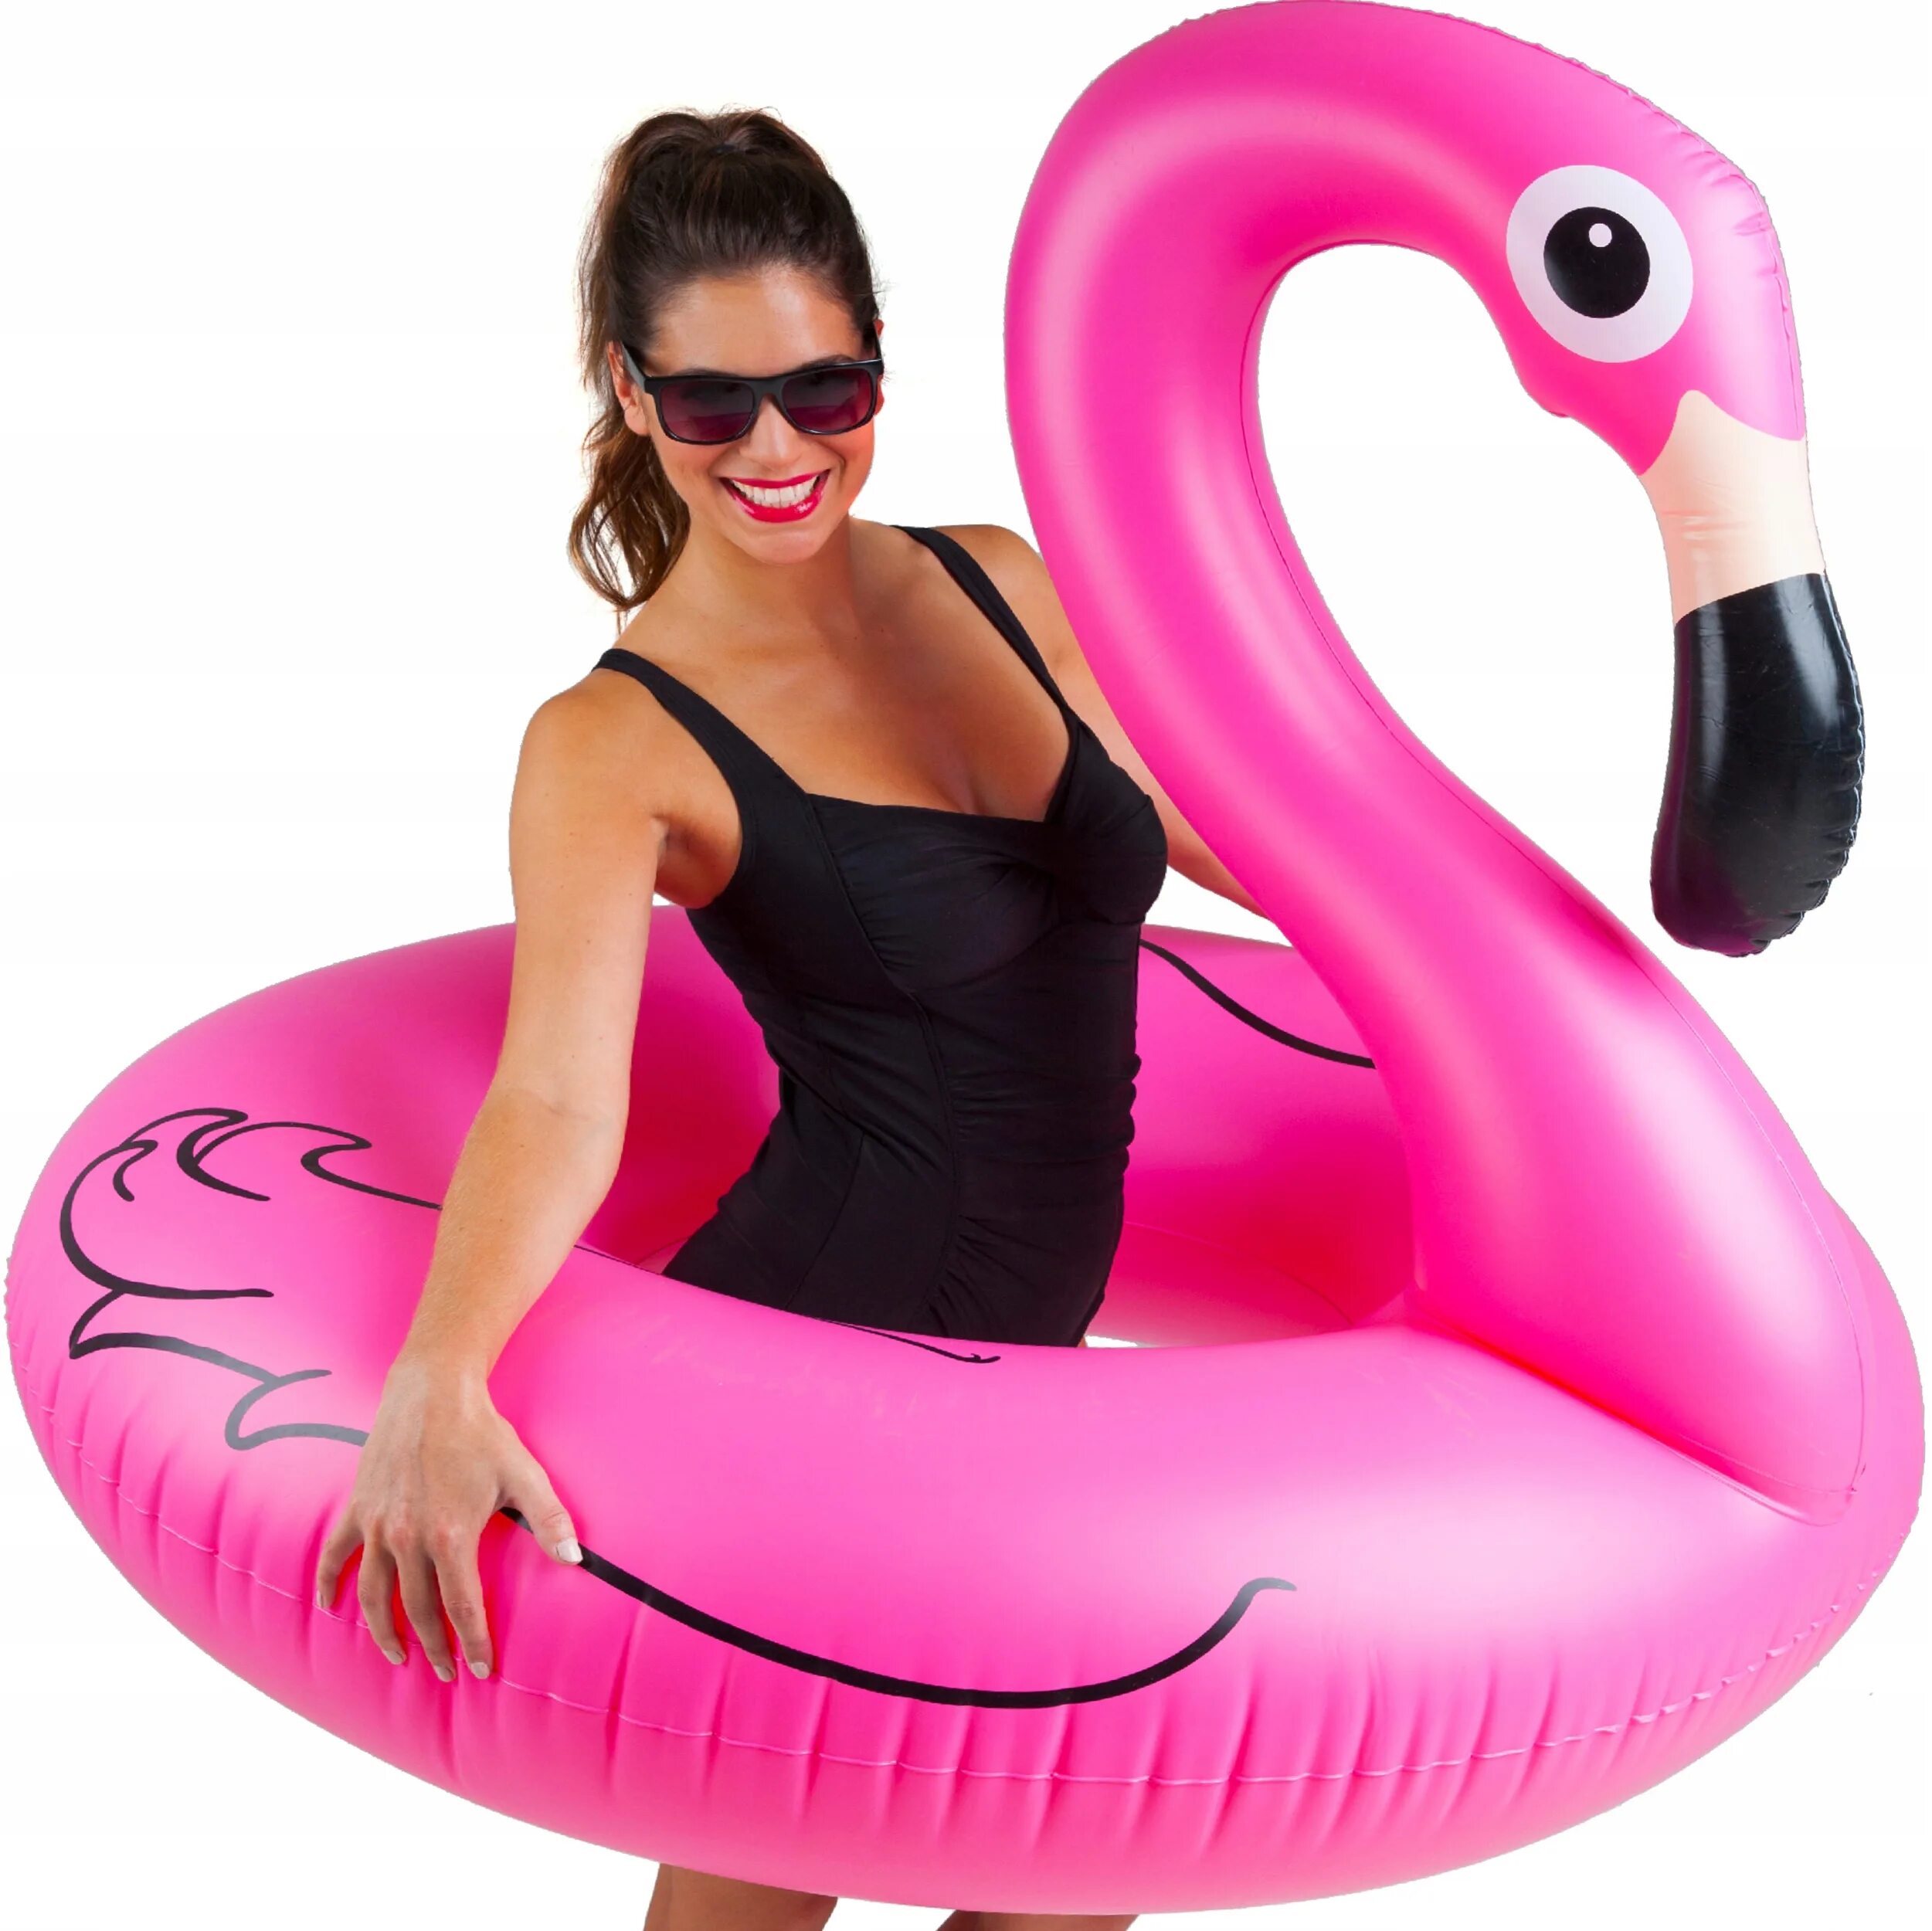 Фламинго для плавания. Надувной круг Фламинго 120 см. Надувной круг Фламинго розовый 120 см. Надувной круг PLT Фламинго s0036. Круг надувной розовый Фламинго.